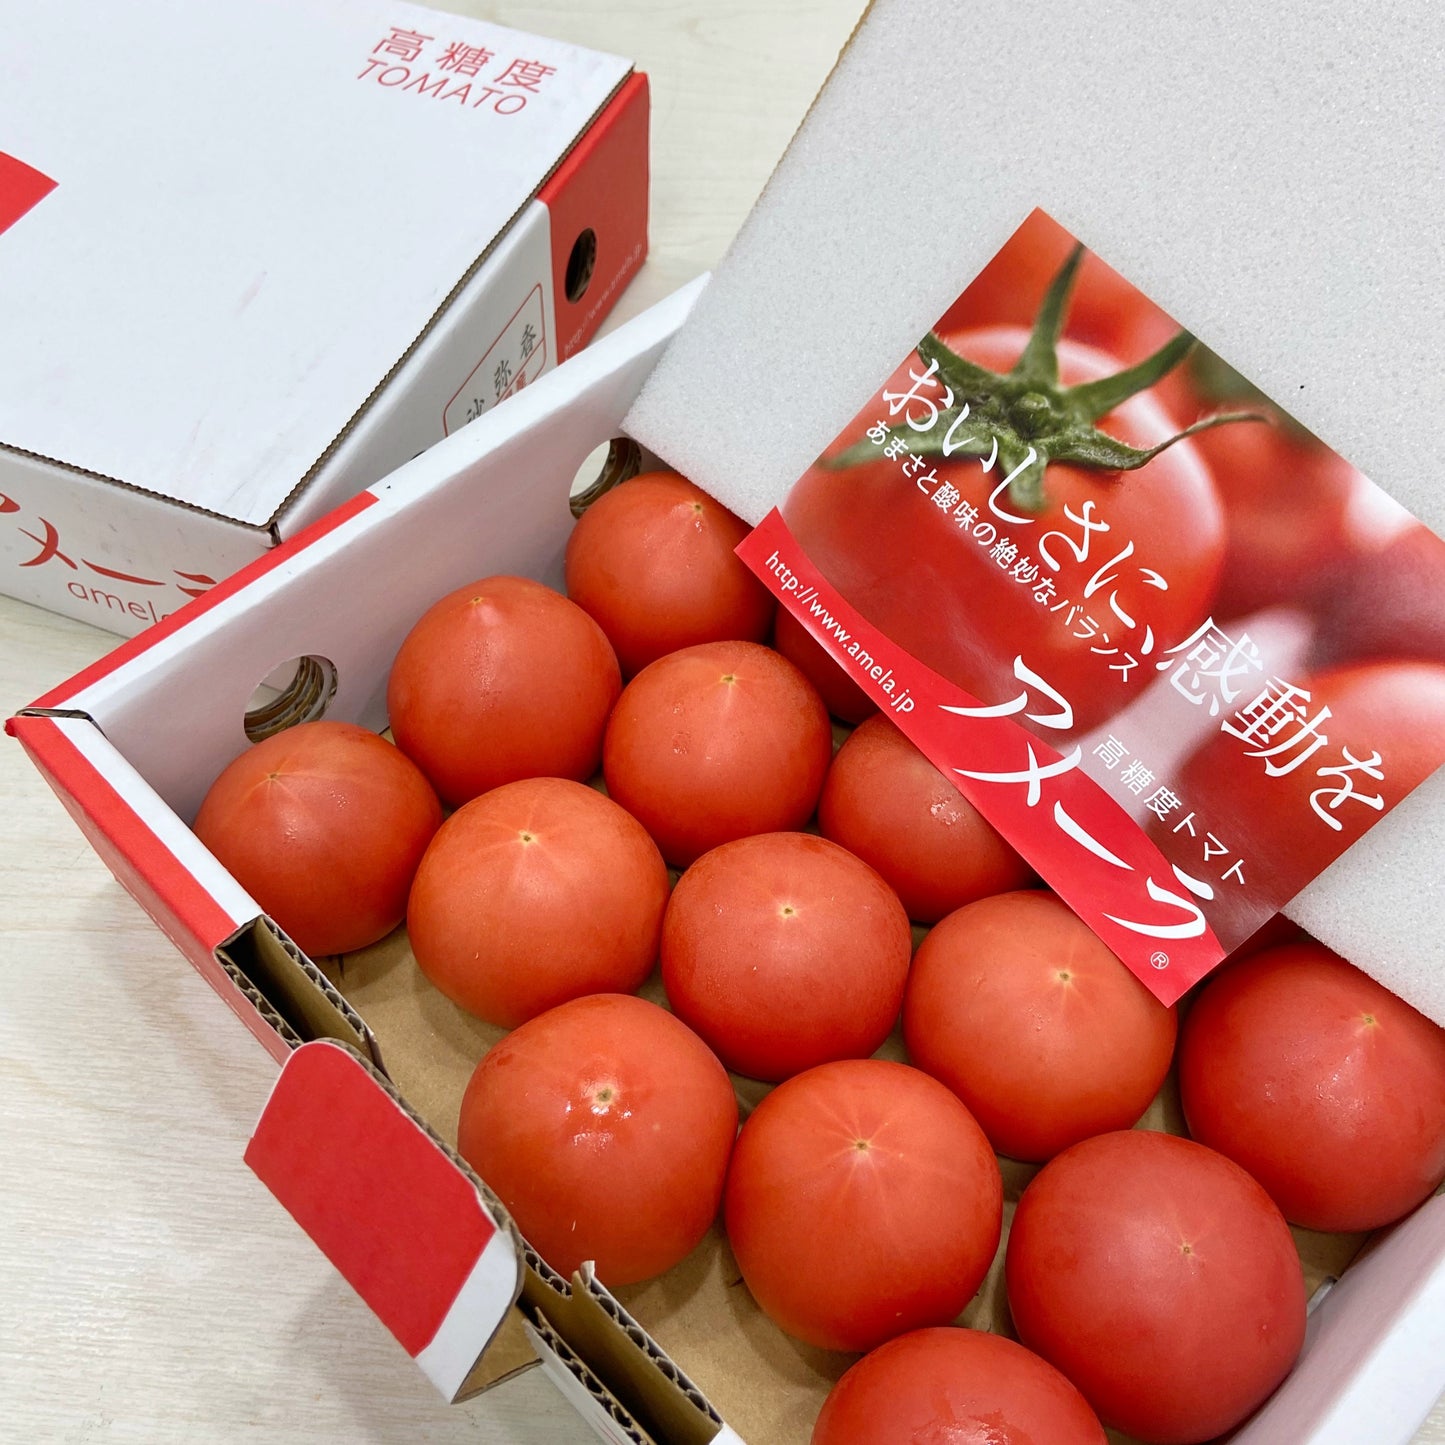 靜岡AMELA高糖度蕃茄 (每盒約900g-1KG)